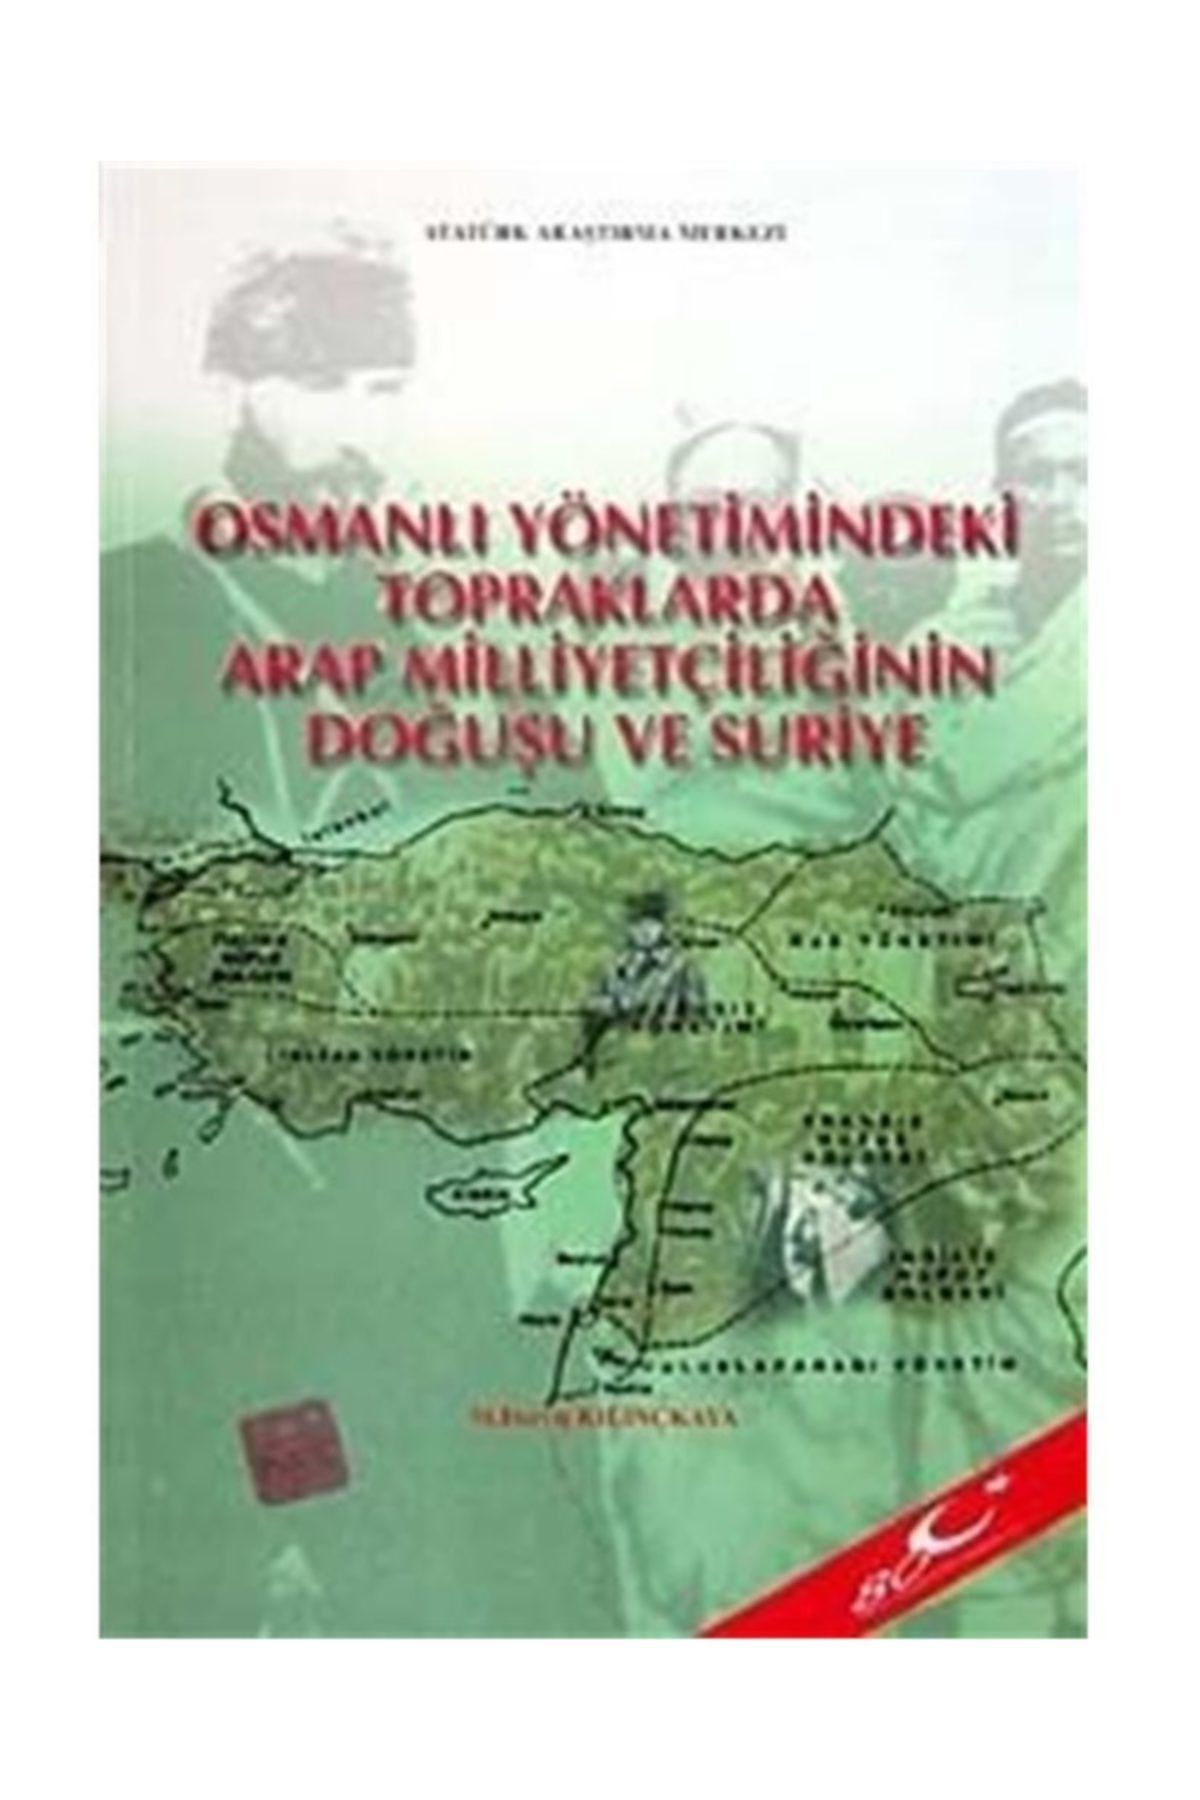 Atatürk Araştırma Merkezi Osmanlı Yönetimindeki Topraklarda Arap Milliyetçiliğinin Doğuşu Ve Suriye